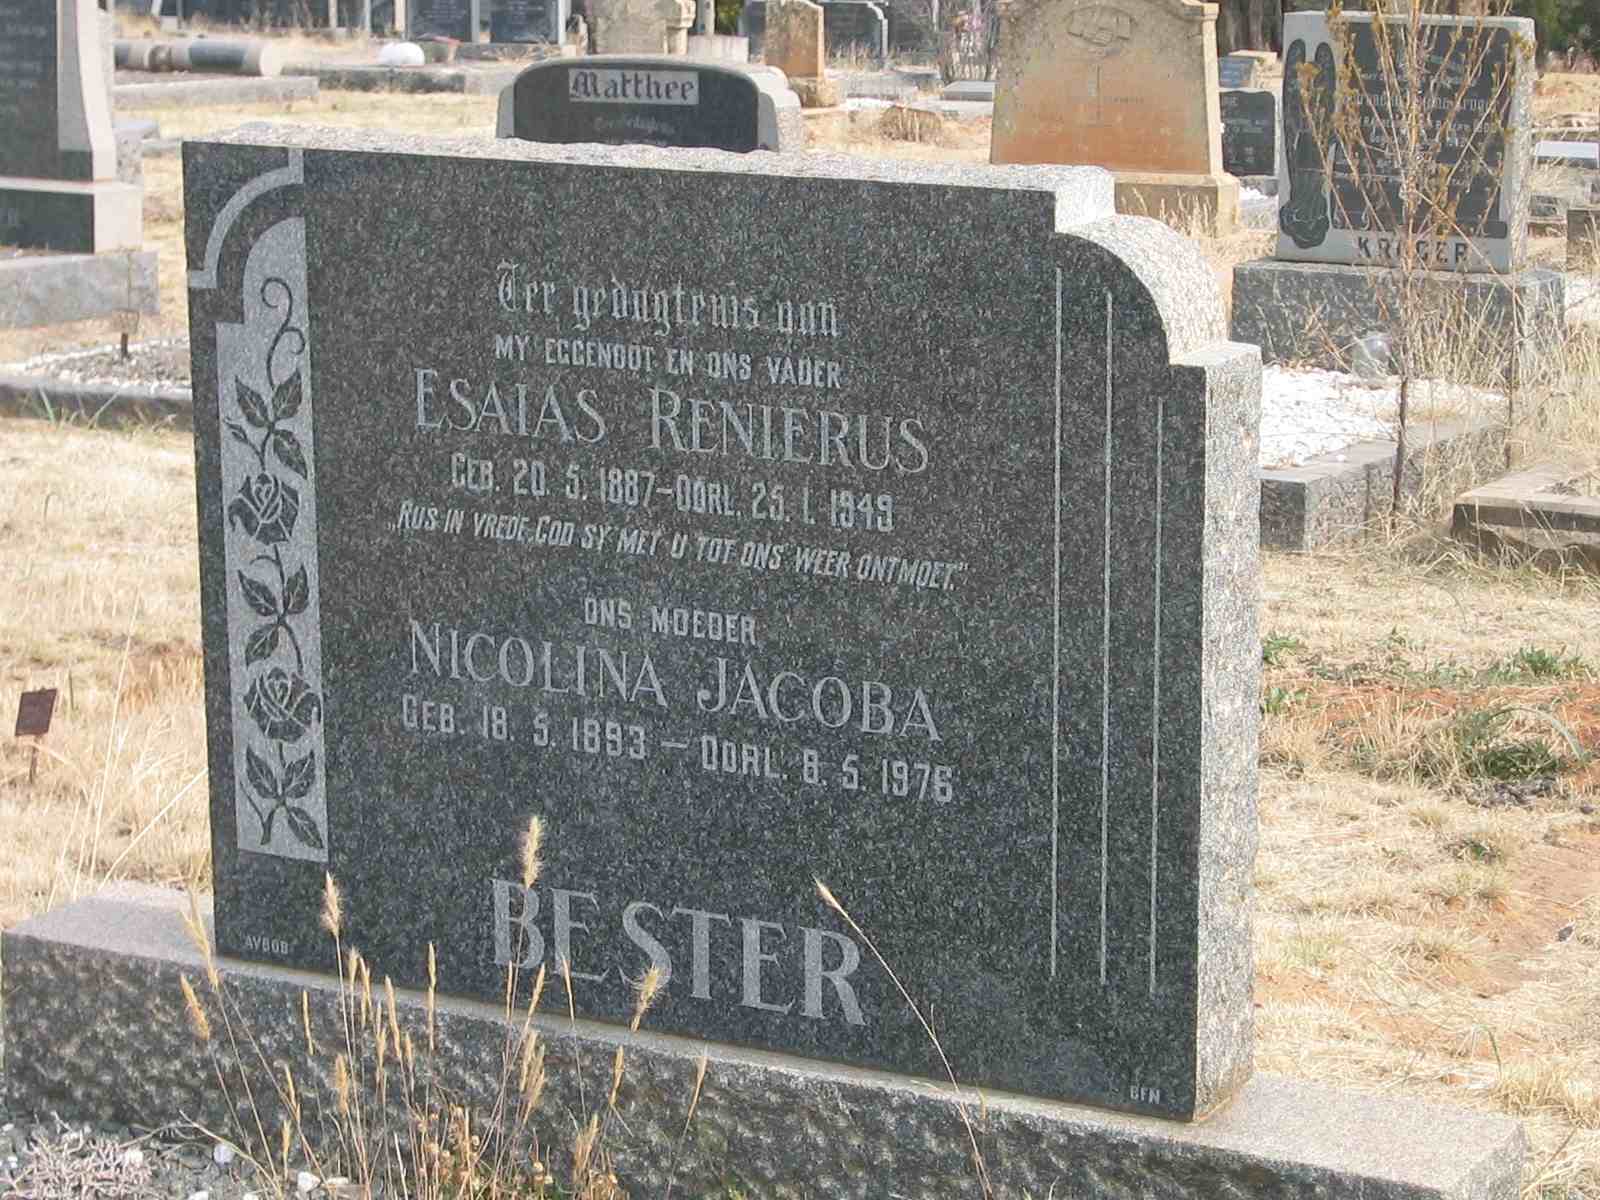 BESTER Esaias Renierus 1887-1949 & Nicolina Jacoba 1893-1976